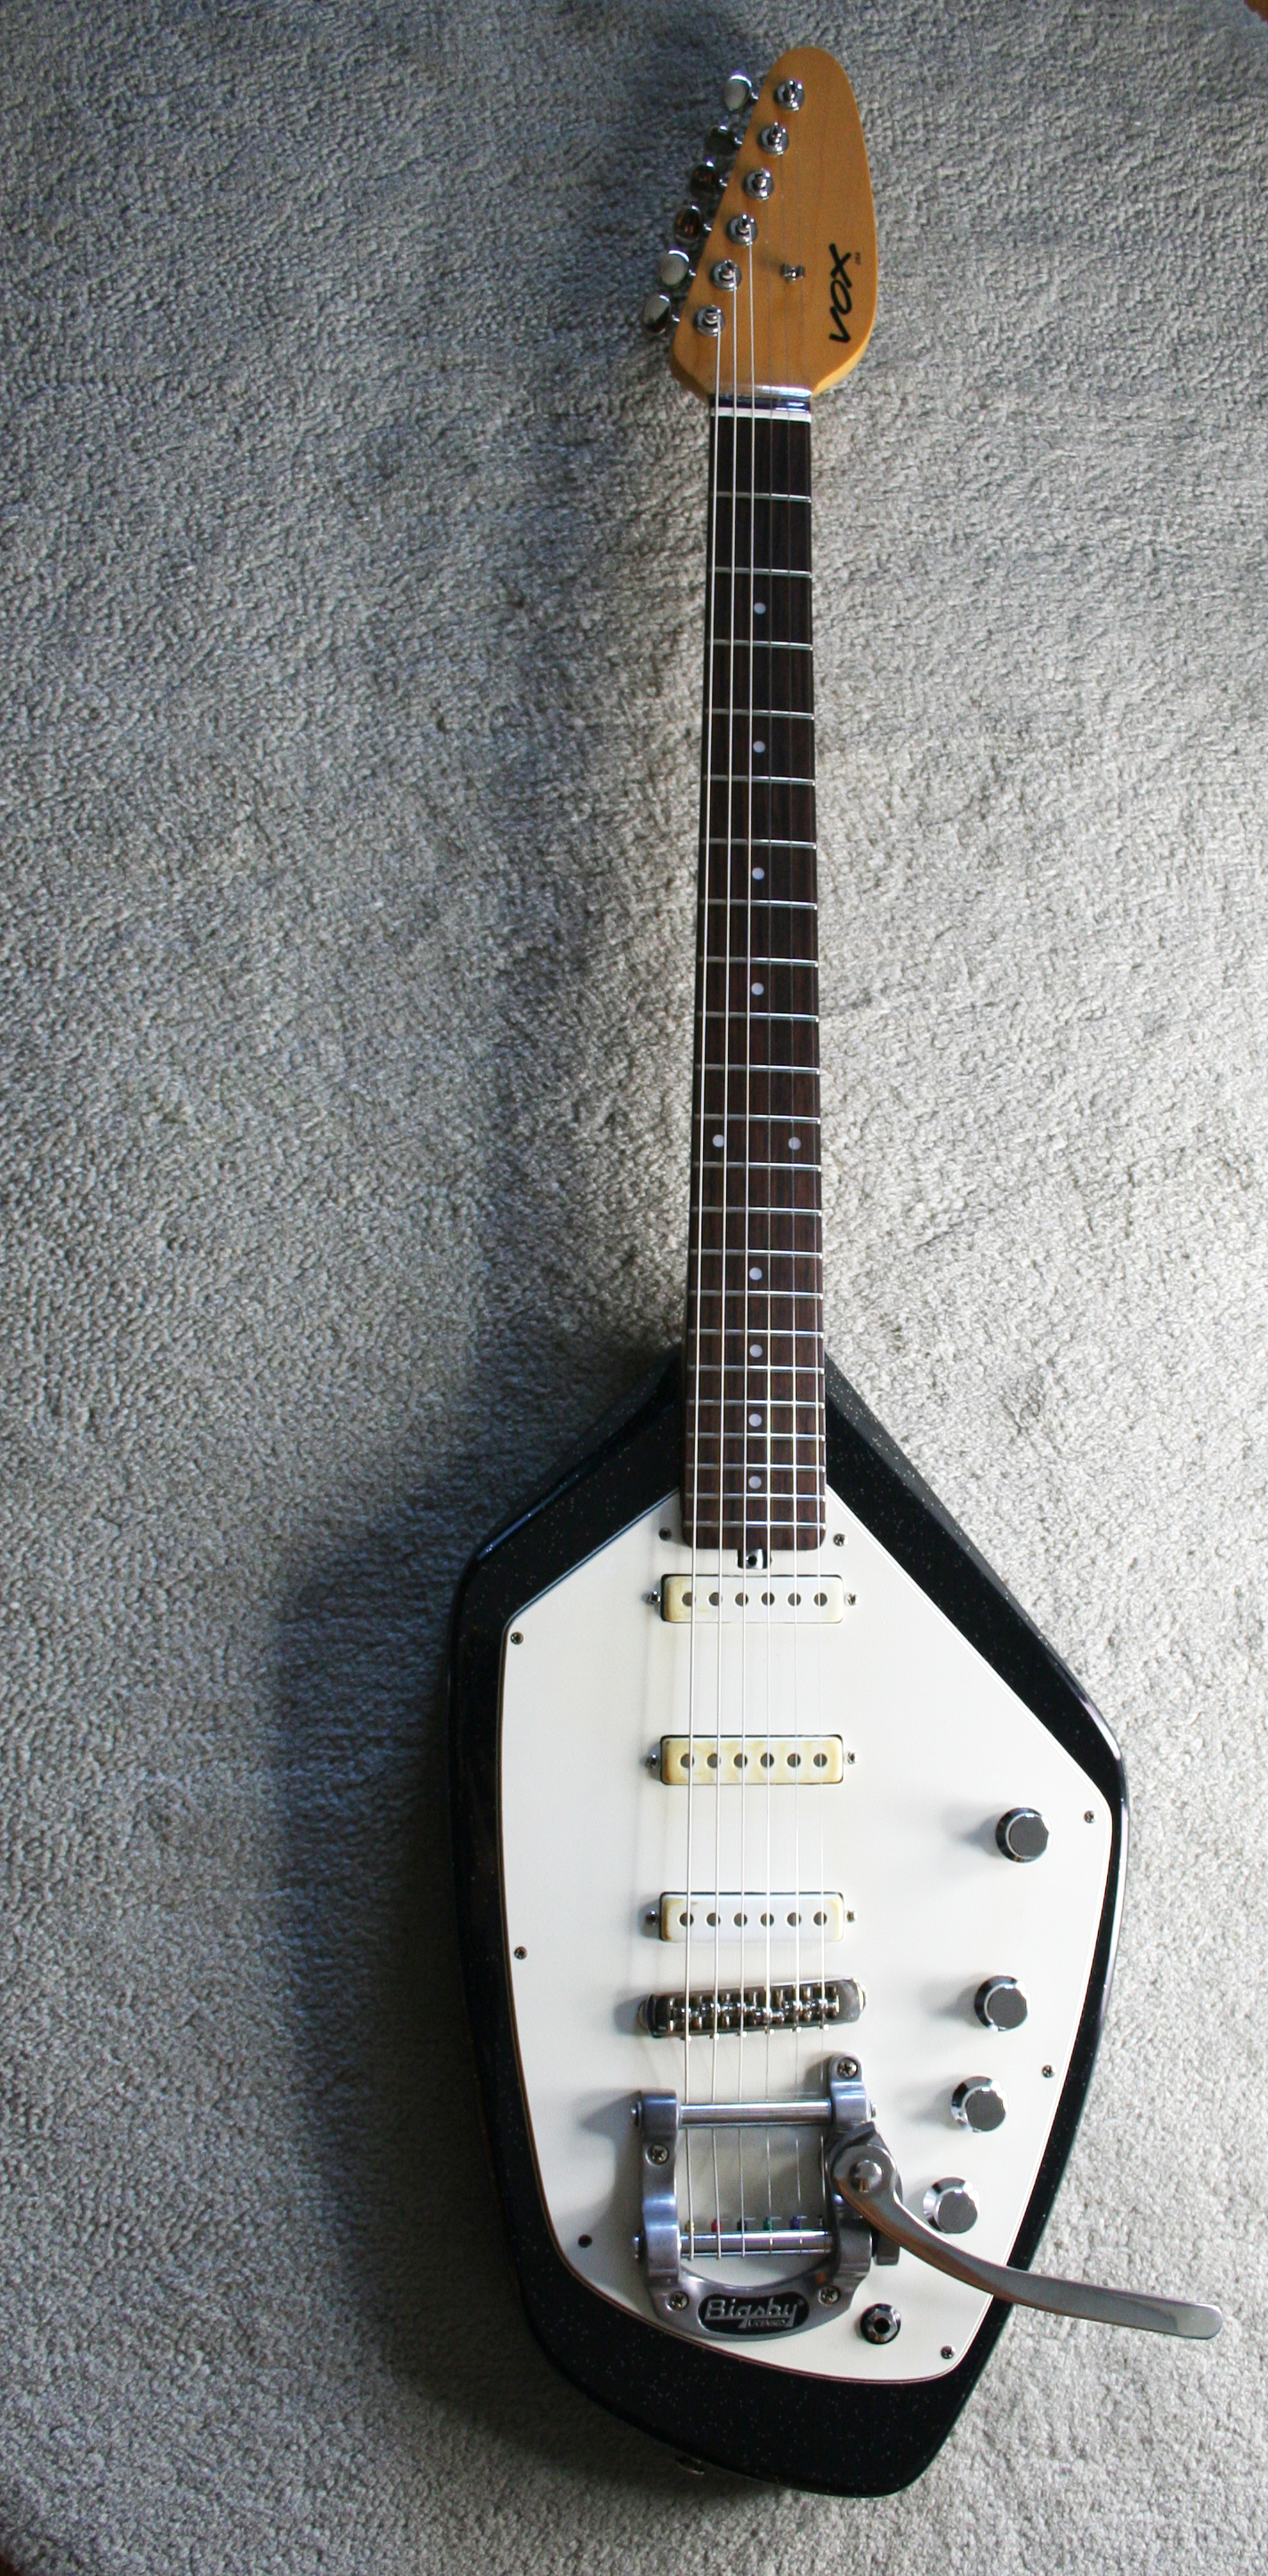 vox phantom guitar